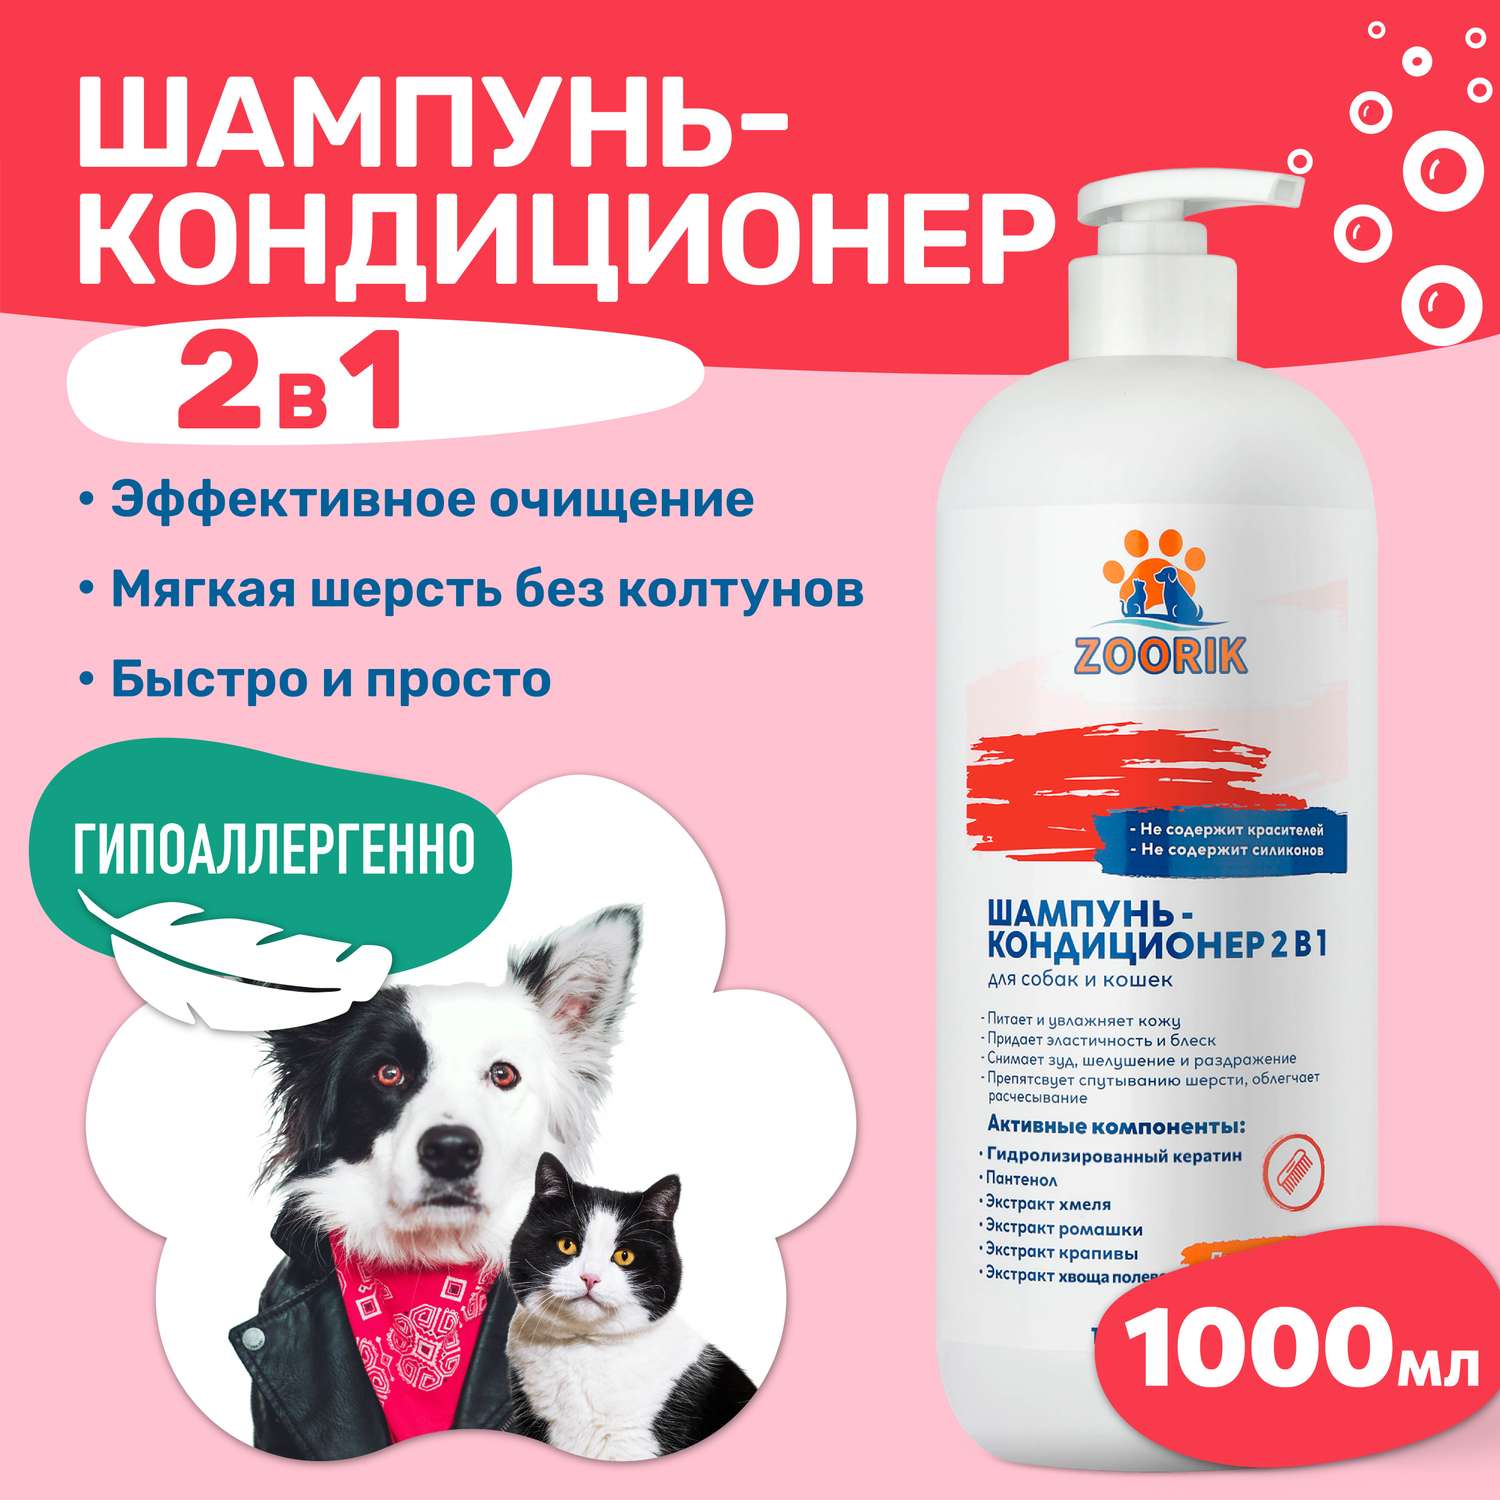 Шампунь-кондиционер ZOORIK для собак и кошек 2 в 1 1000 мл - фото 2